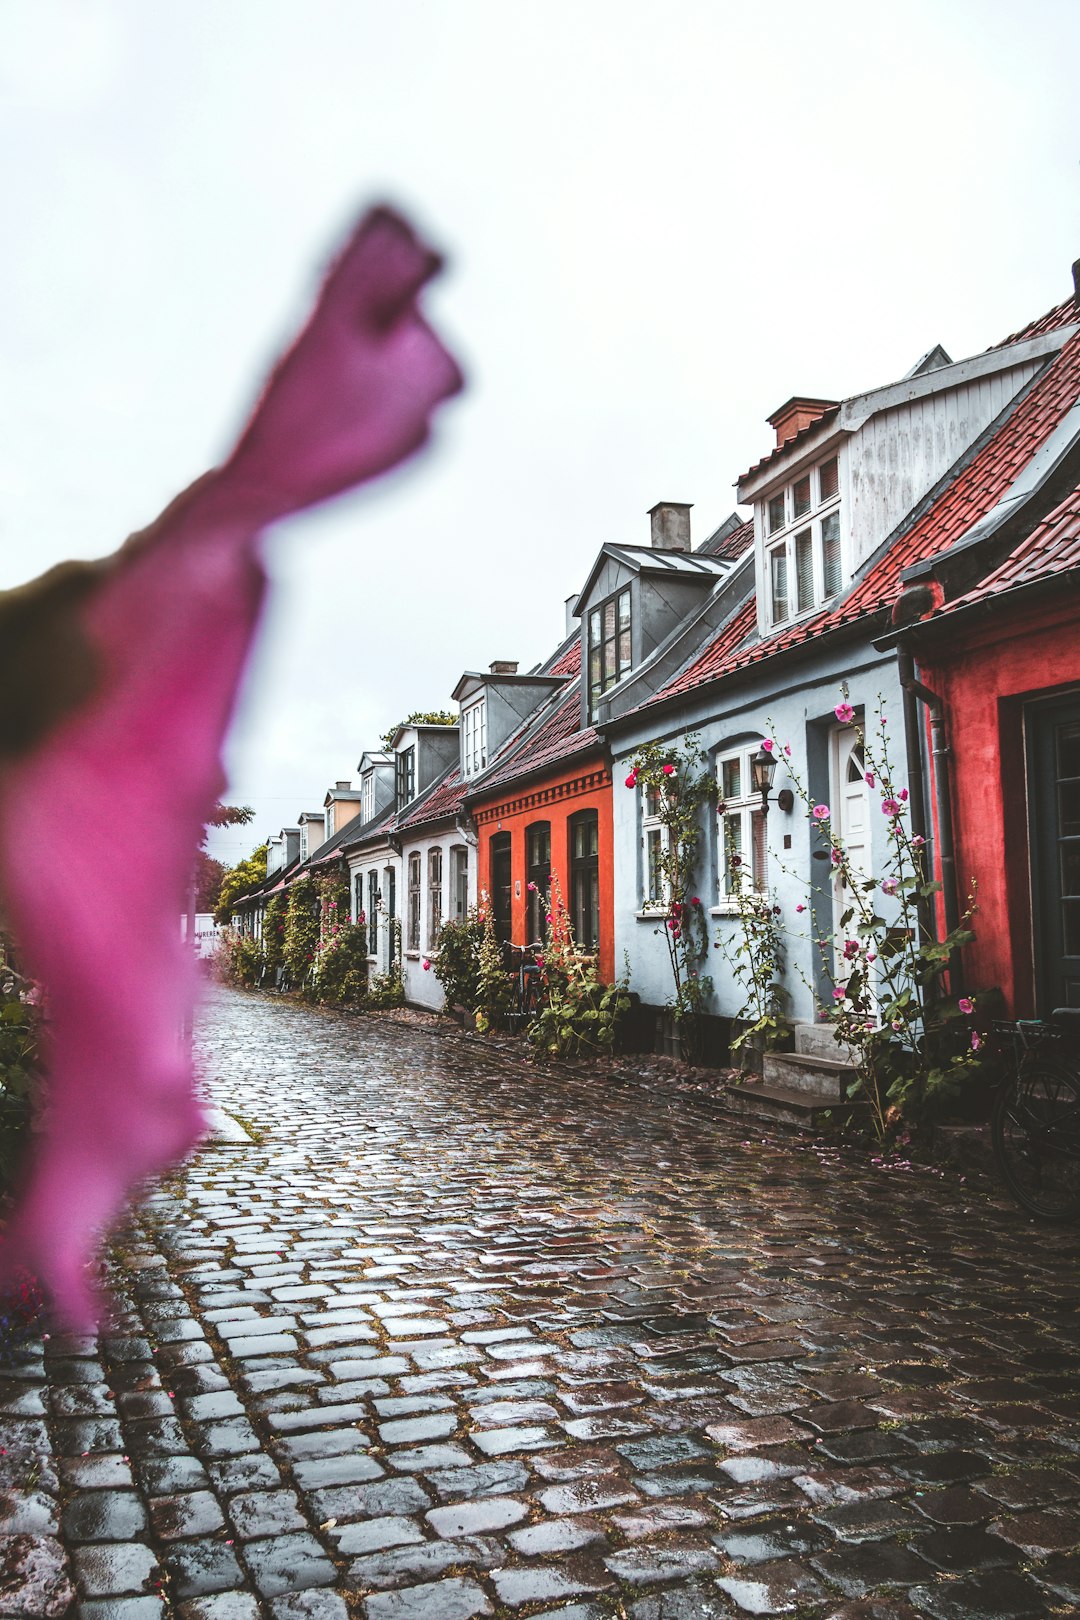 Travel Tips and Stories of Møllestien in Denmark